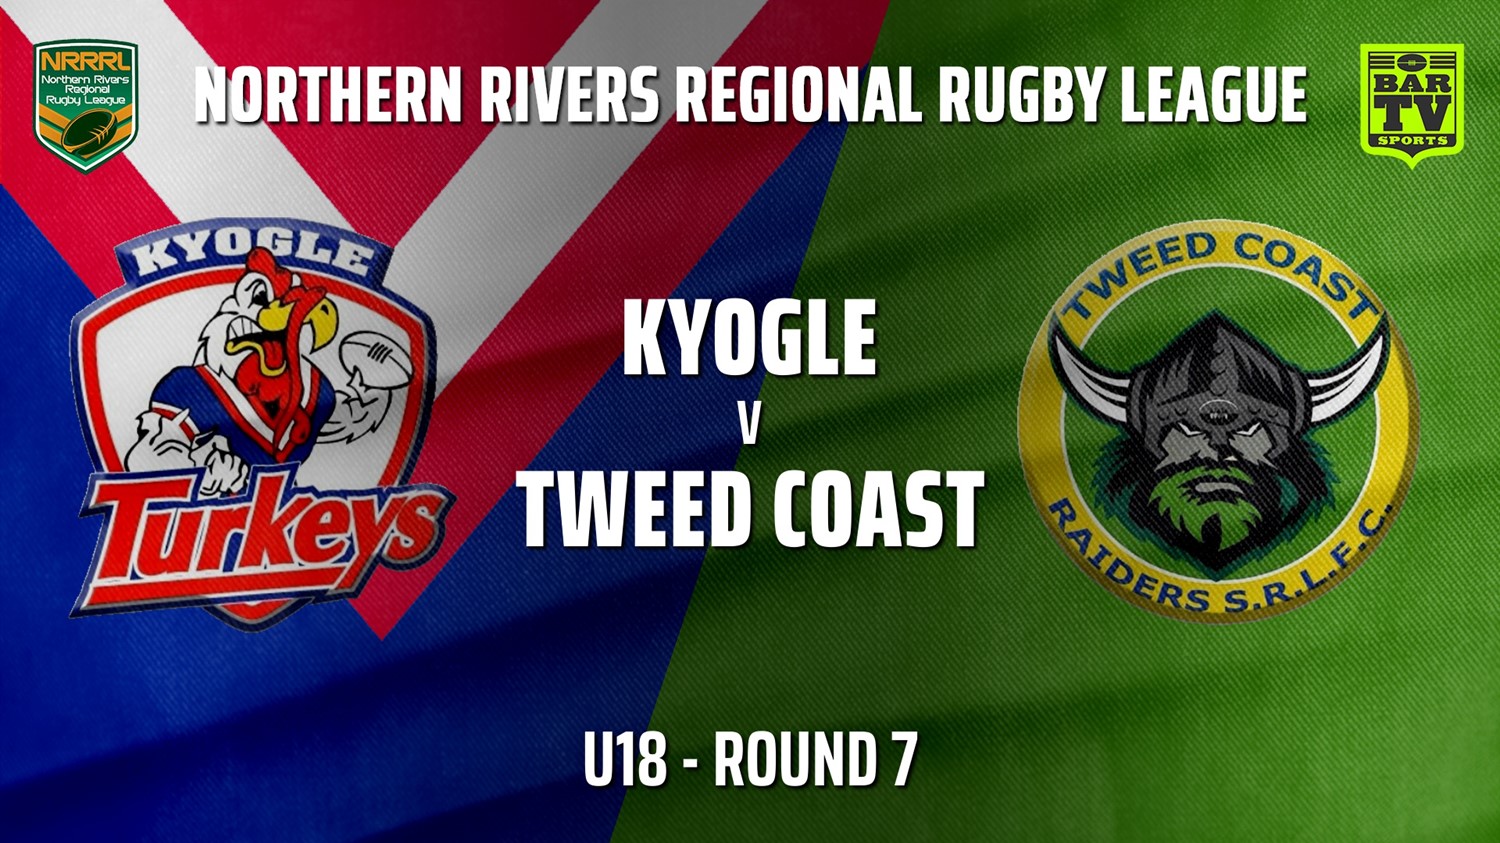 210619-Northern Rivers Round 7 - U18 - Kyogle Turkeys v Tweed Coast Raiders Slate Image